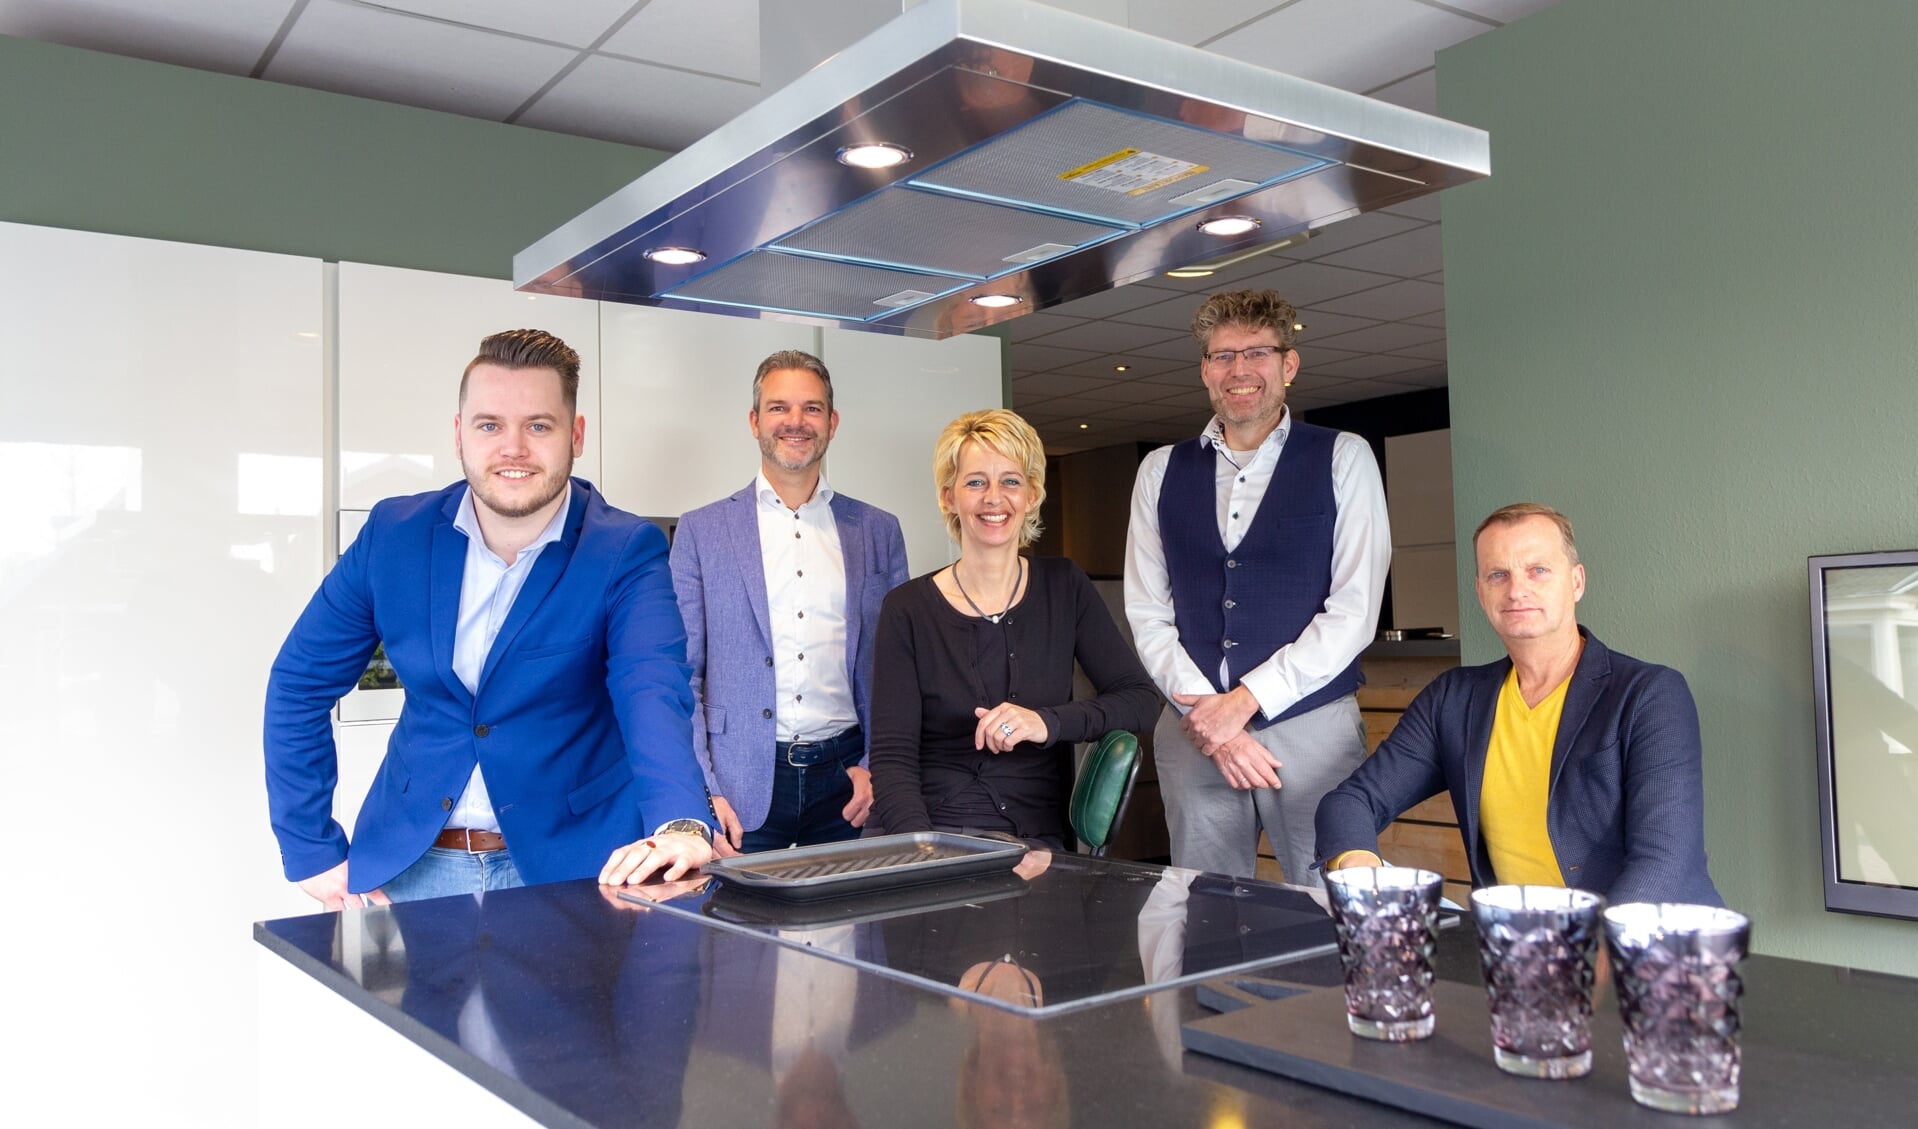 Het huidige team van Trend Keukens: Bento Sicco van der Wal, Wilko Kronemeijer, Jeannette Postmus, Erik Koudenburg en Johan Bosker. Op de foto ontbreekt Joke Huisman.